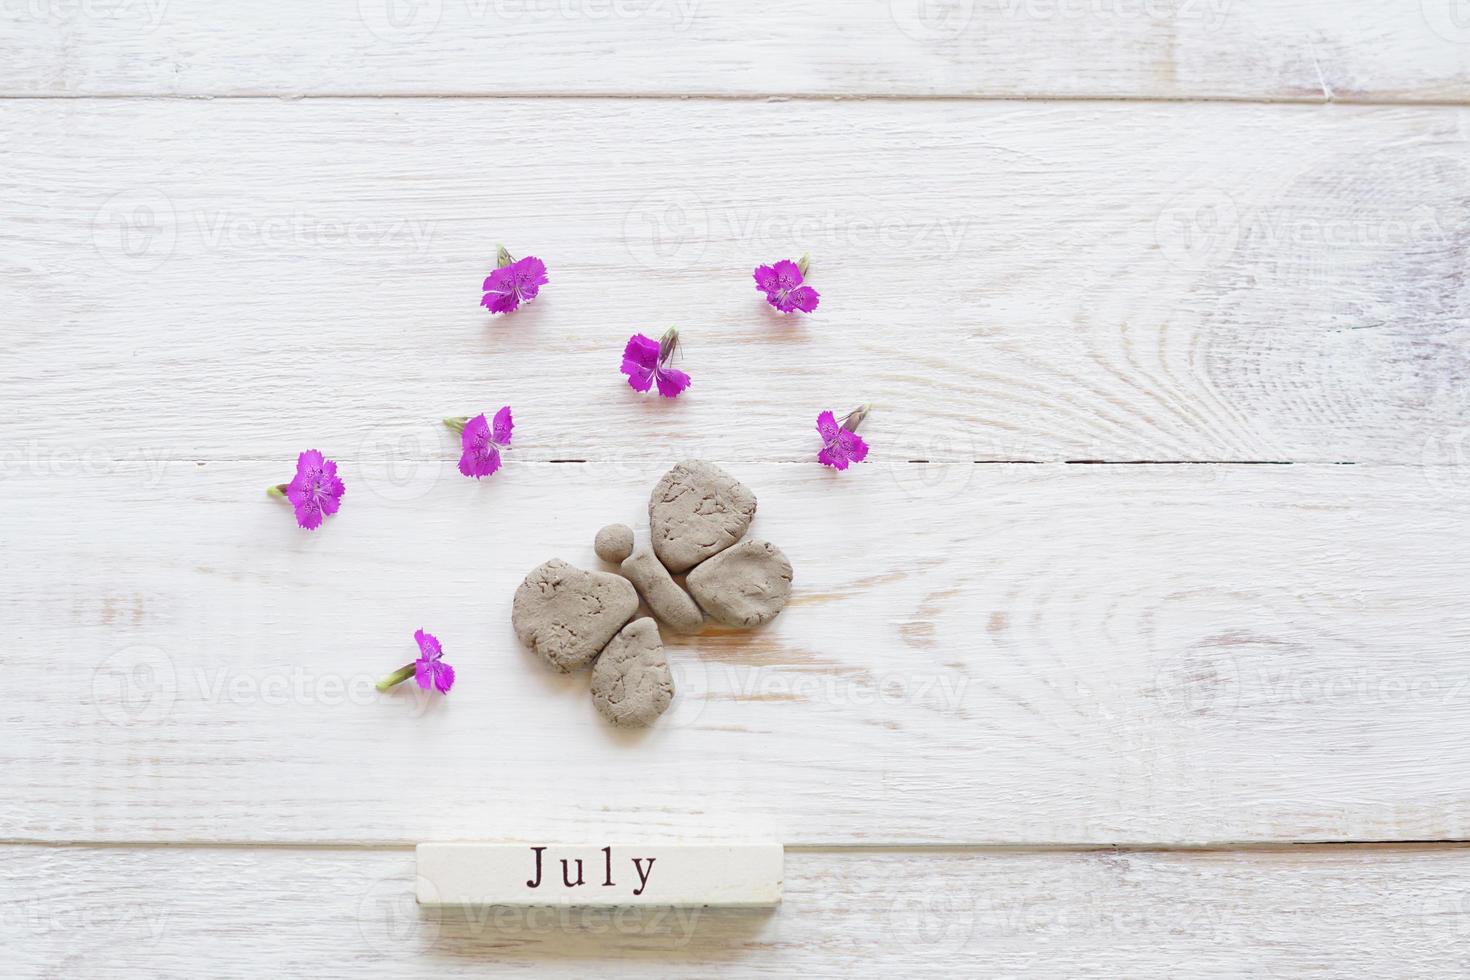 erster julitag, bunter hintergrund mit kalender, blumen und tonschmetterling foto